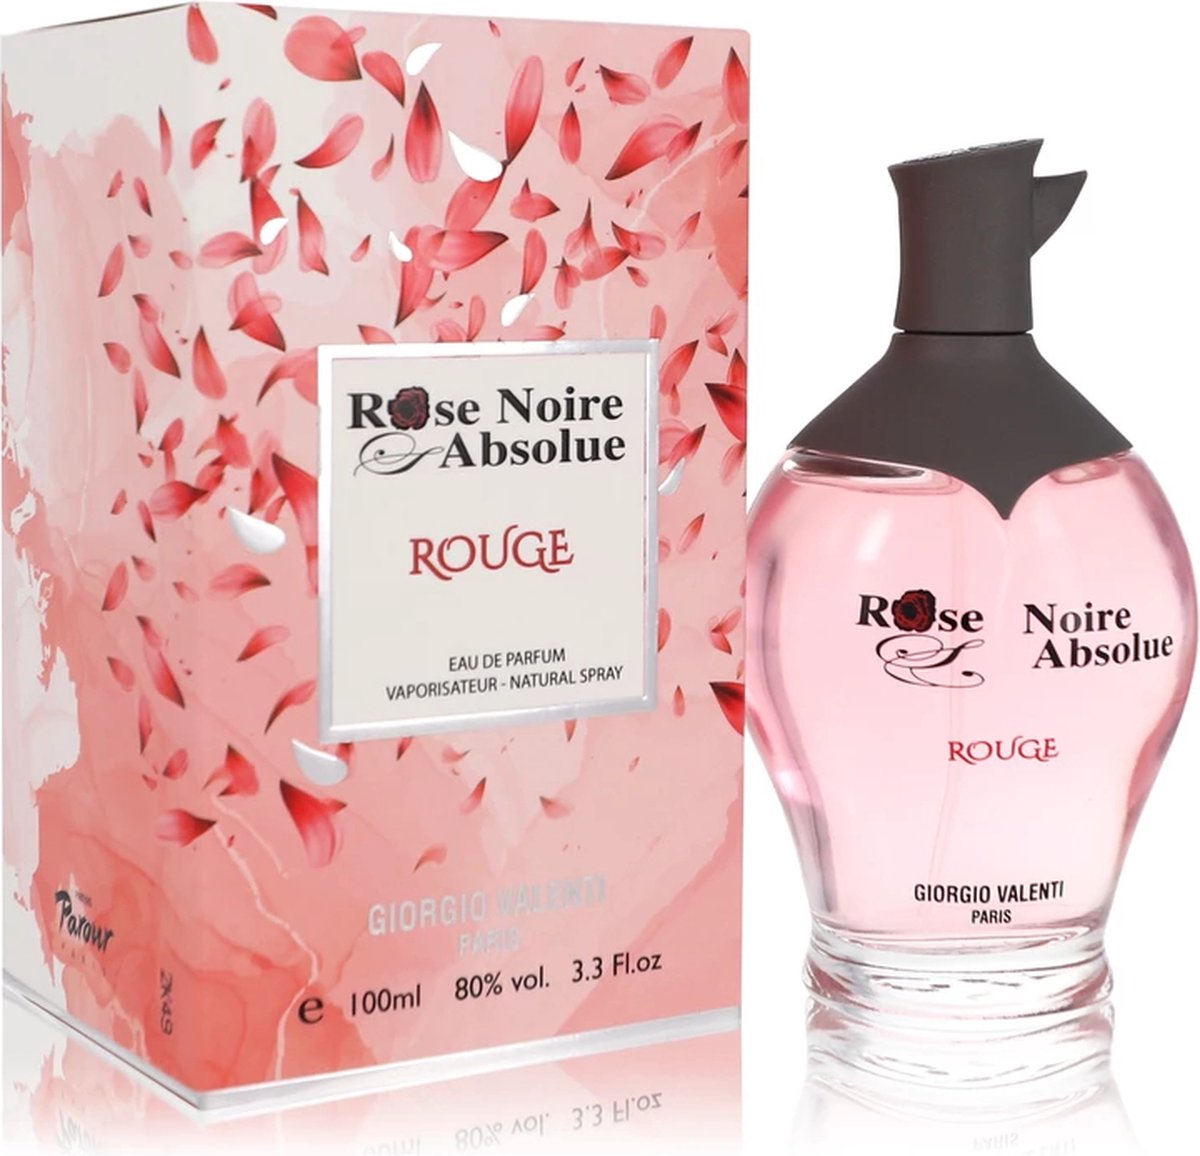 Giorgio Valenti Rose Noire Absolue Rouge eau de parfum spray 100 ml